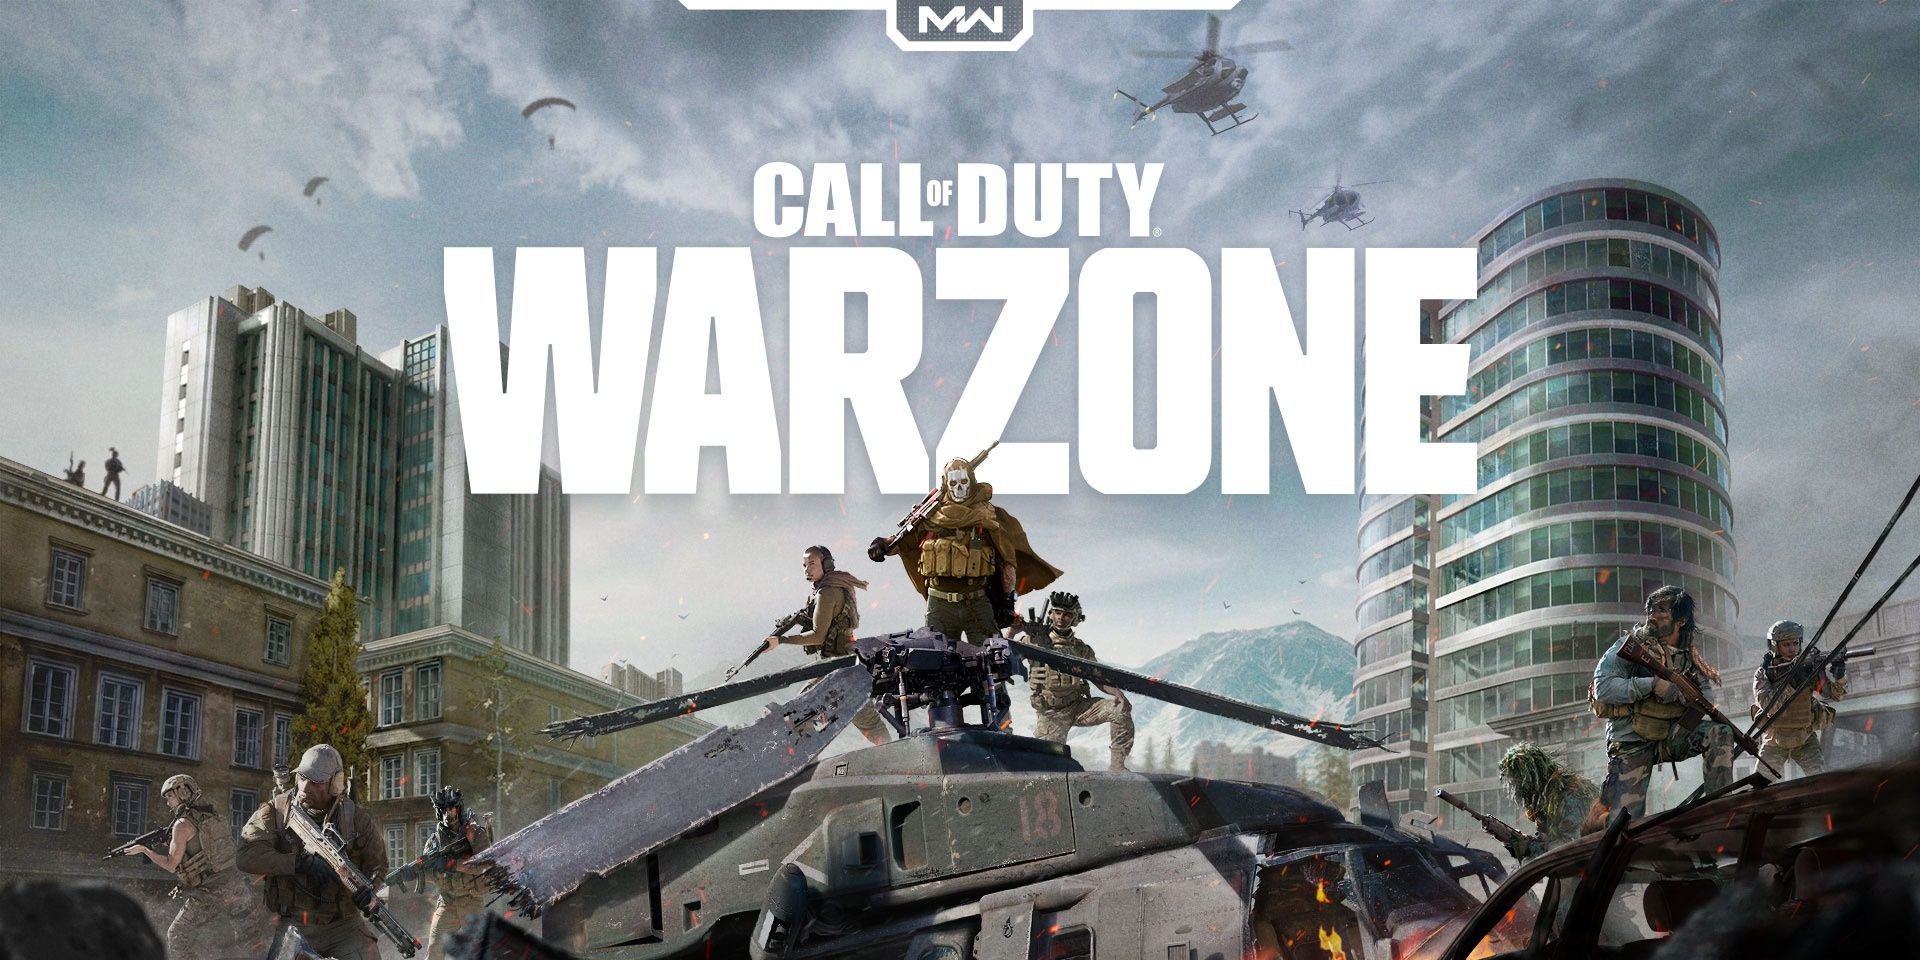 Arte da capa de Call of Duty Warzone